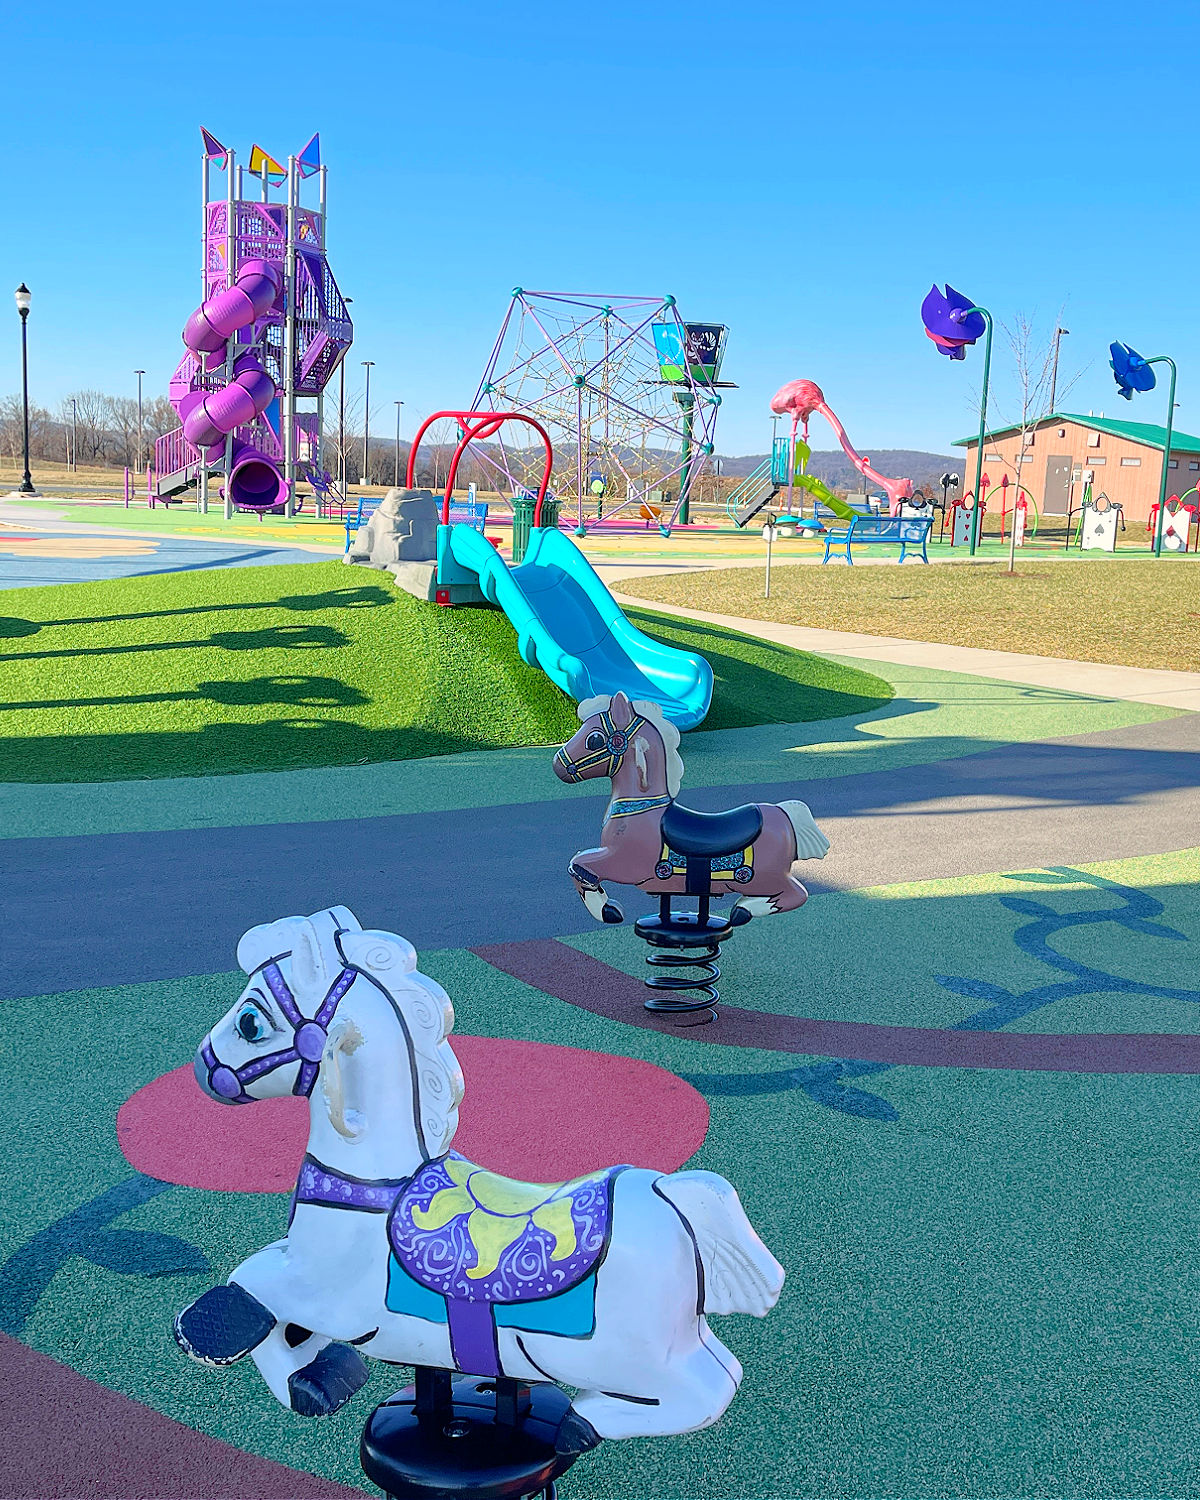 sophie and madigan's playground